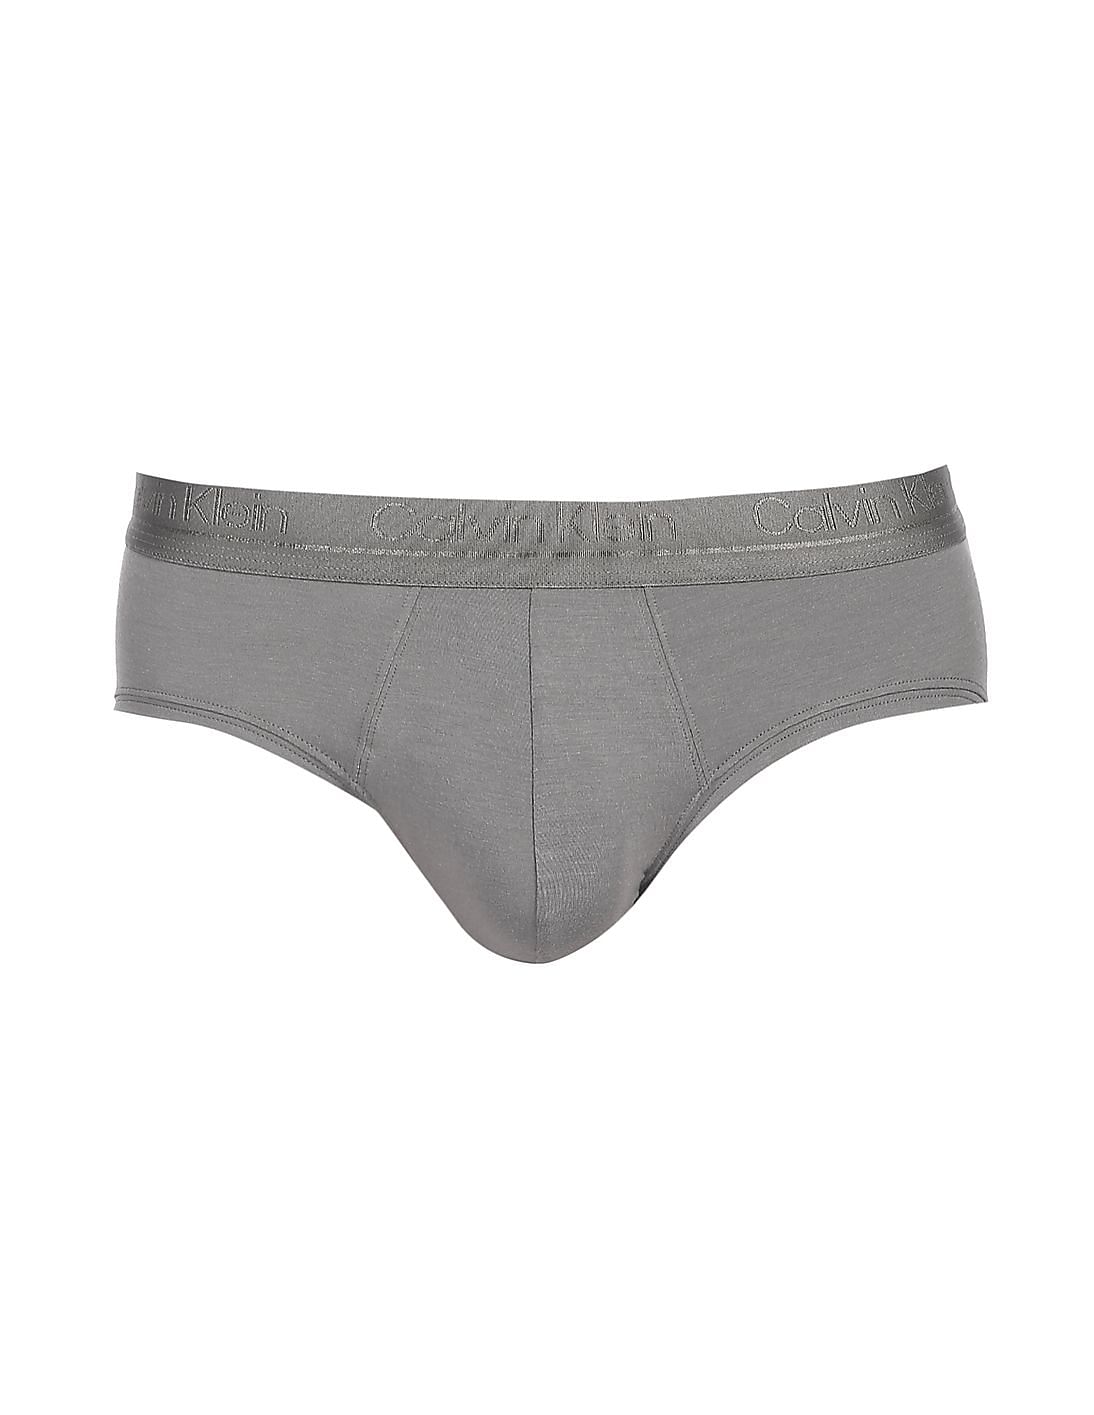 Buy Calvin Klein Underwear Men Grey Low Rise Silk Knit Solid Hip